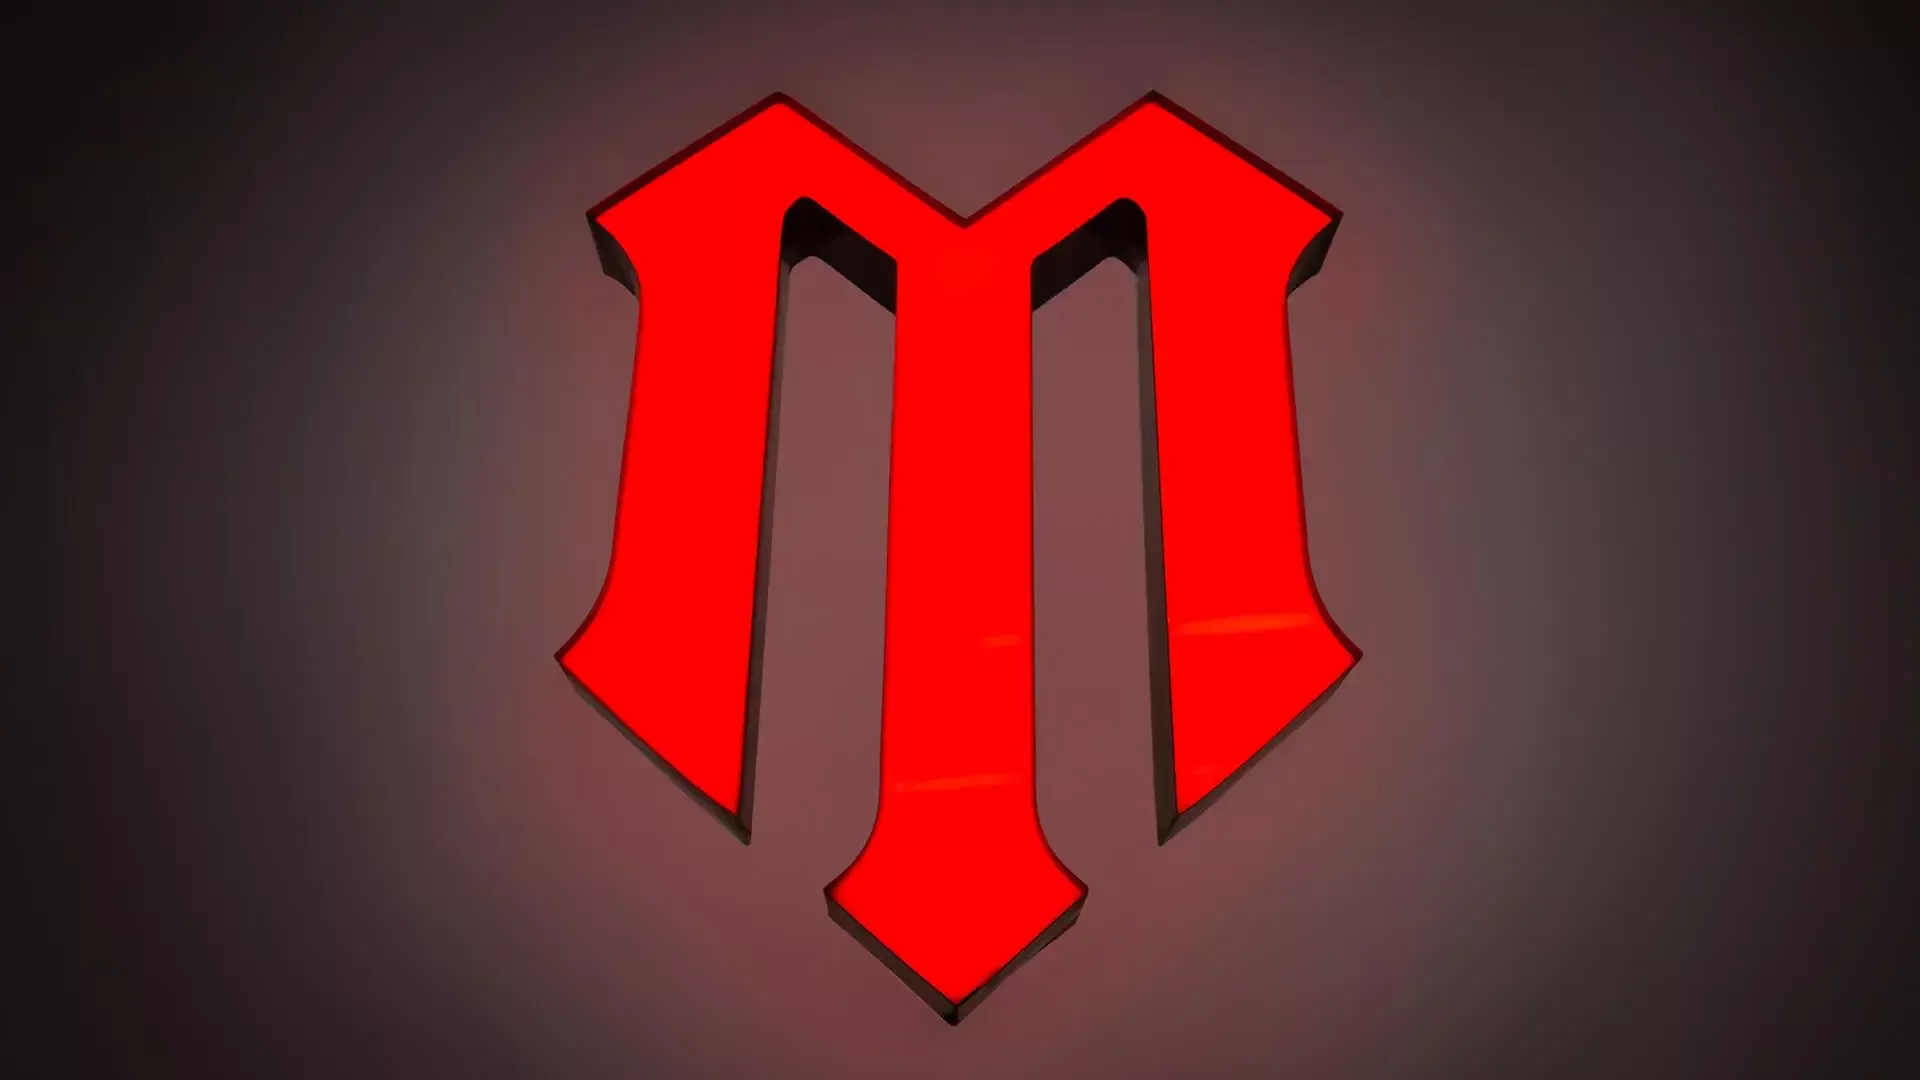 Lettera M - lettera personalizzata illuminata a LED in rosso